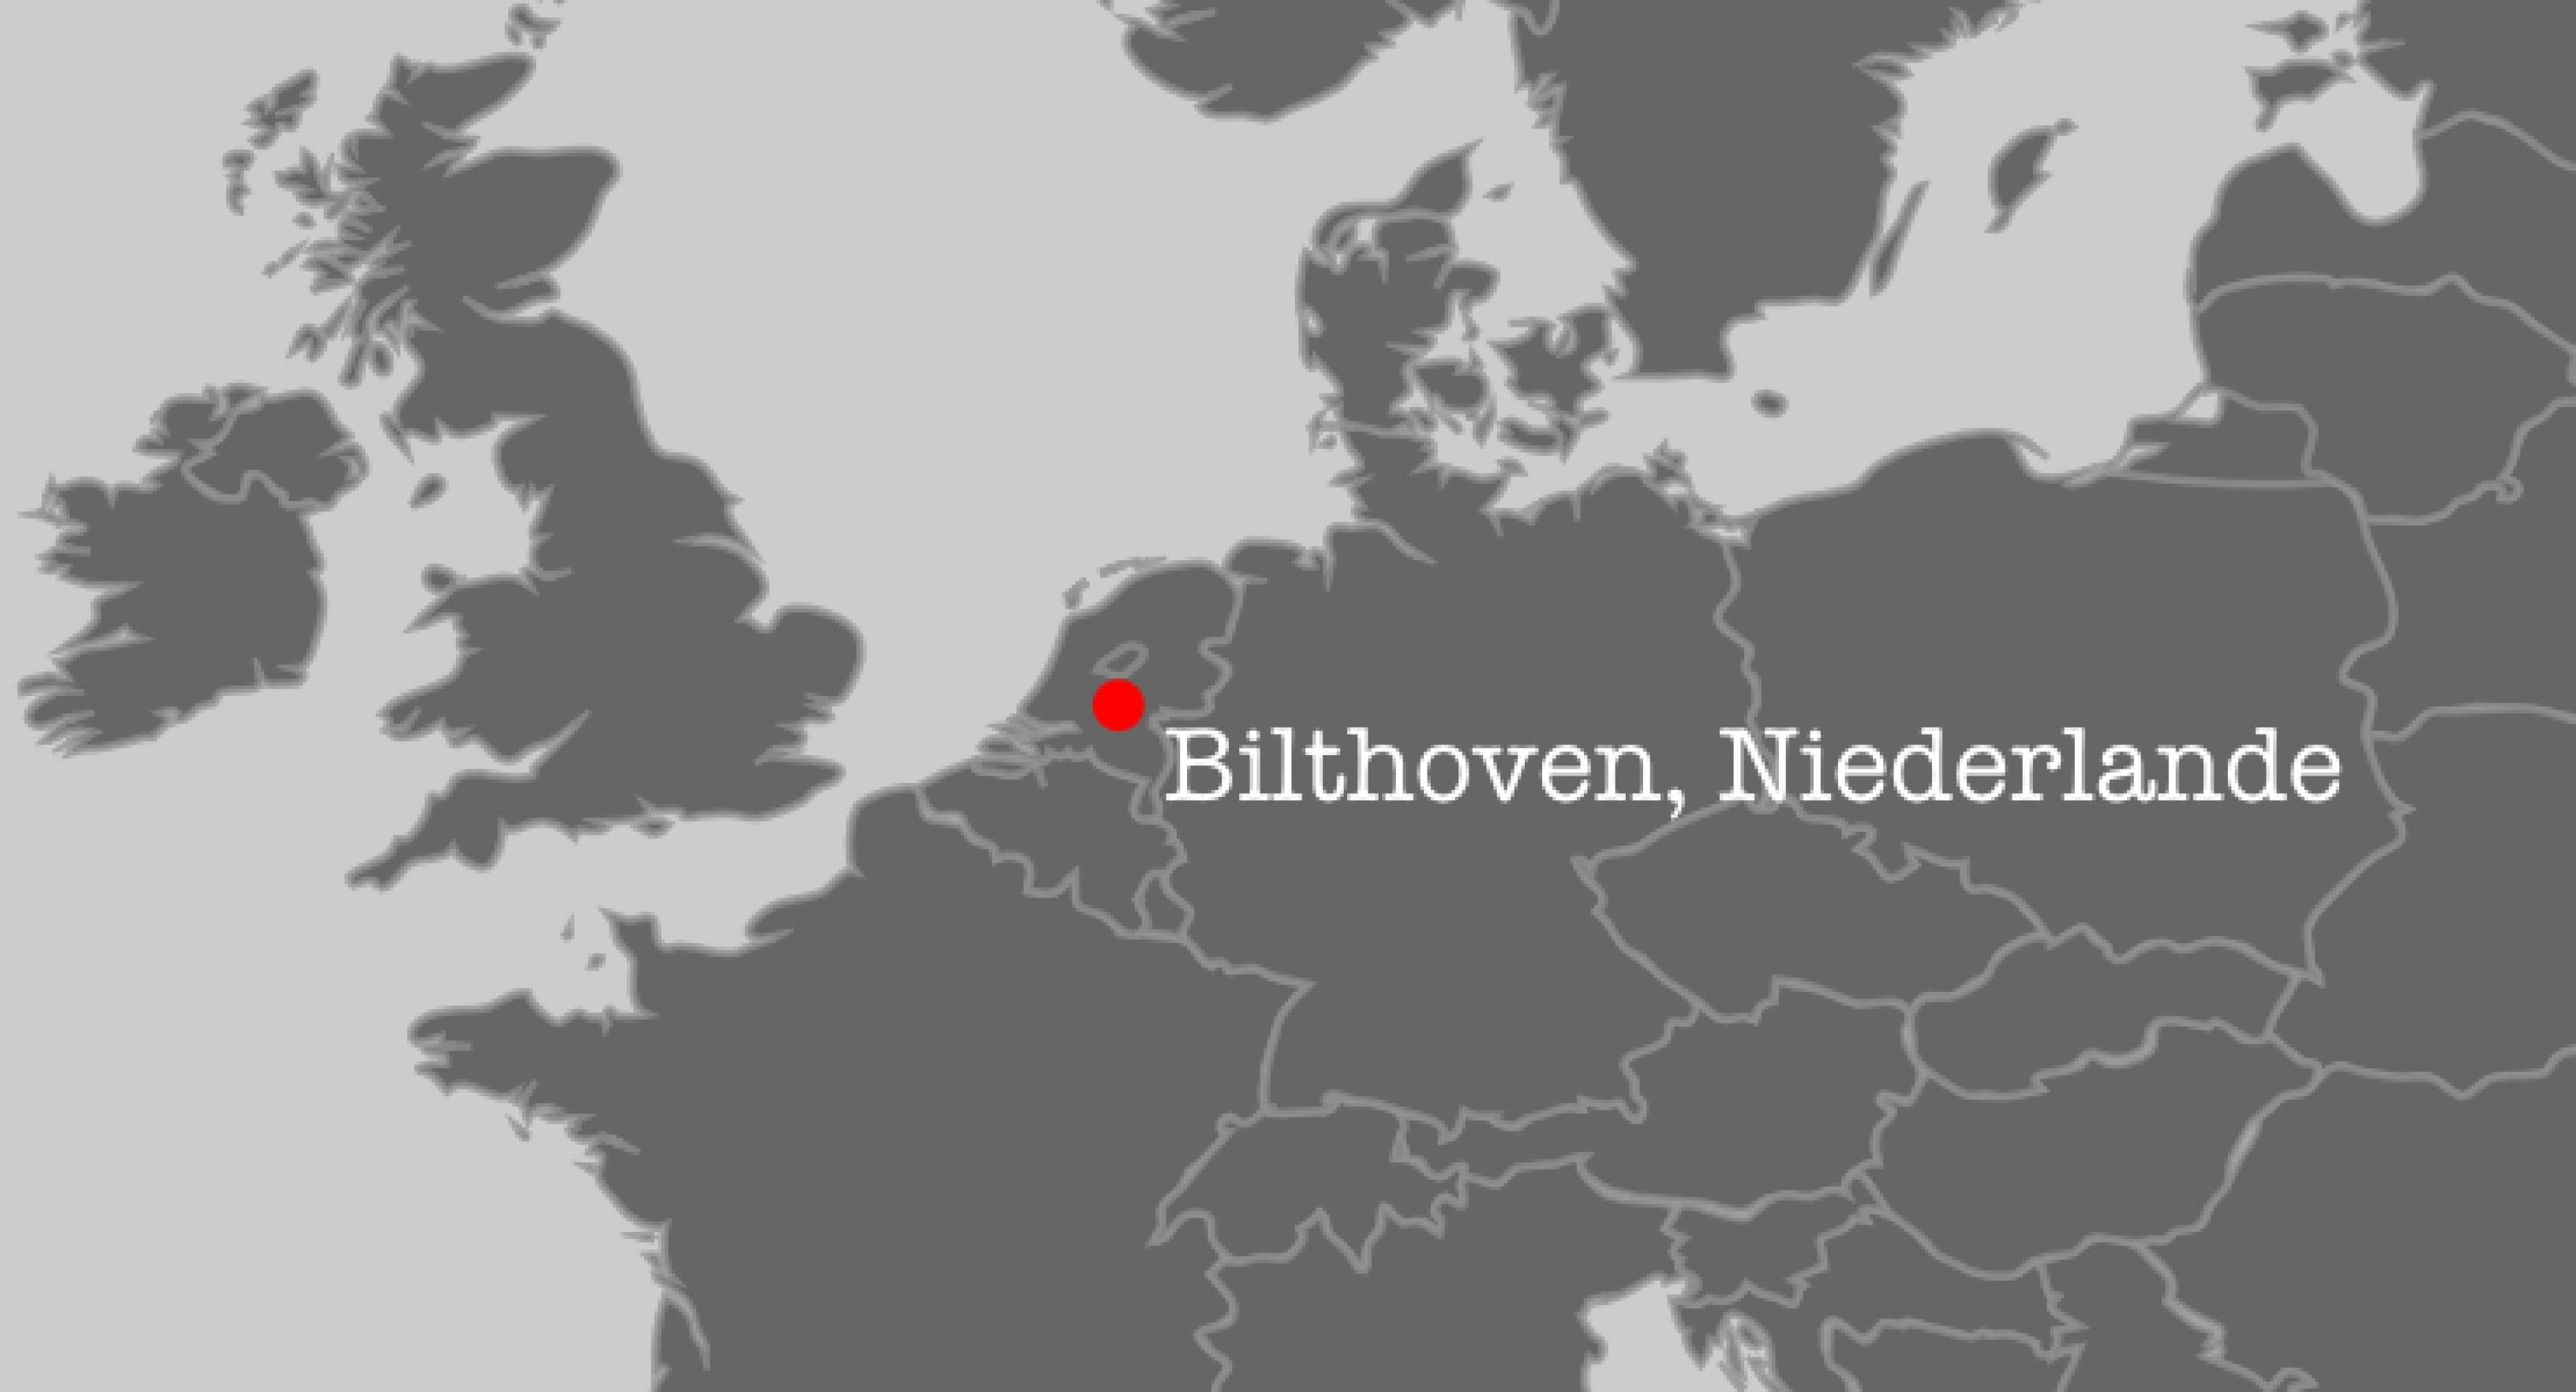 Ausschnitt aus der Karte Europas mit den Niederlanden im Zentrum, und der Ort Bilthoven in rot hervorgehoben.